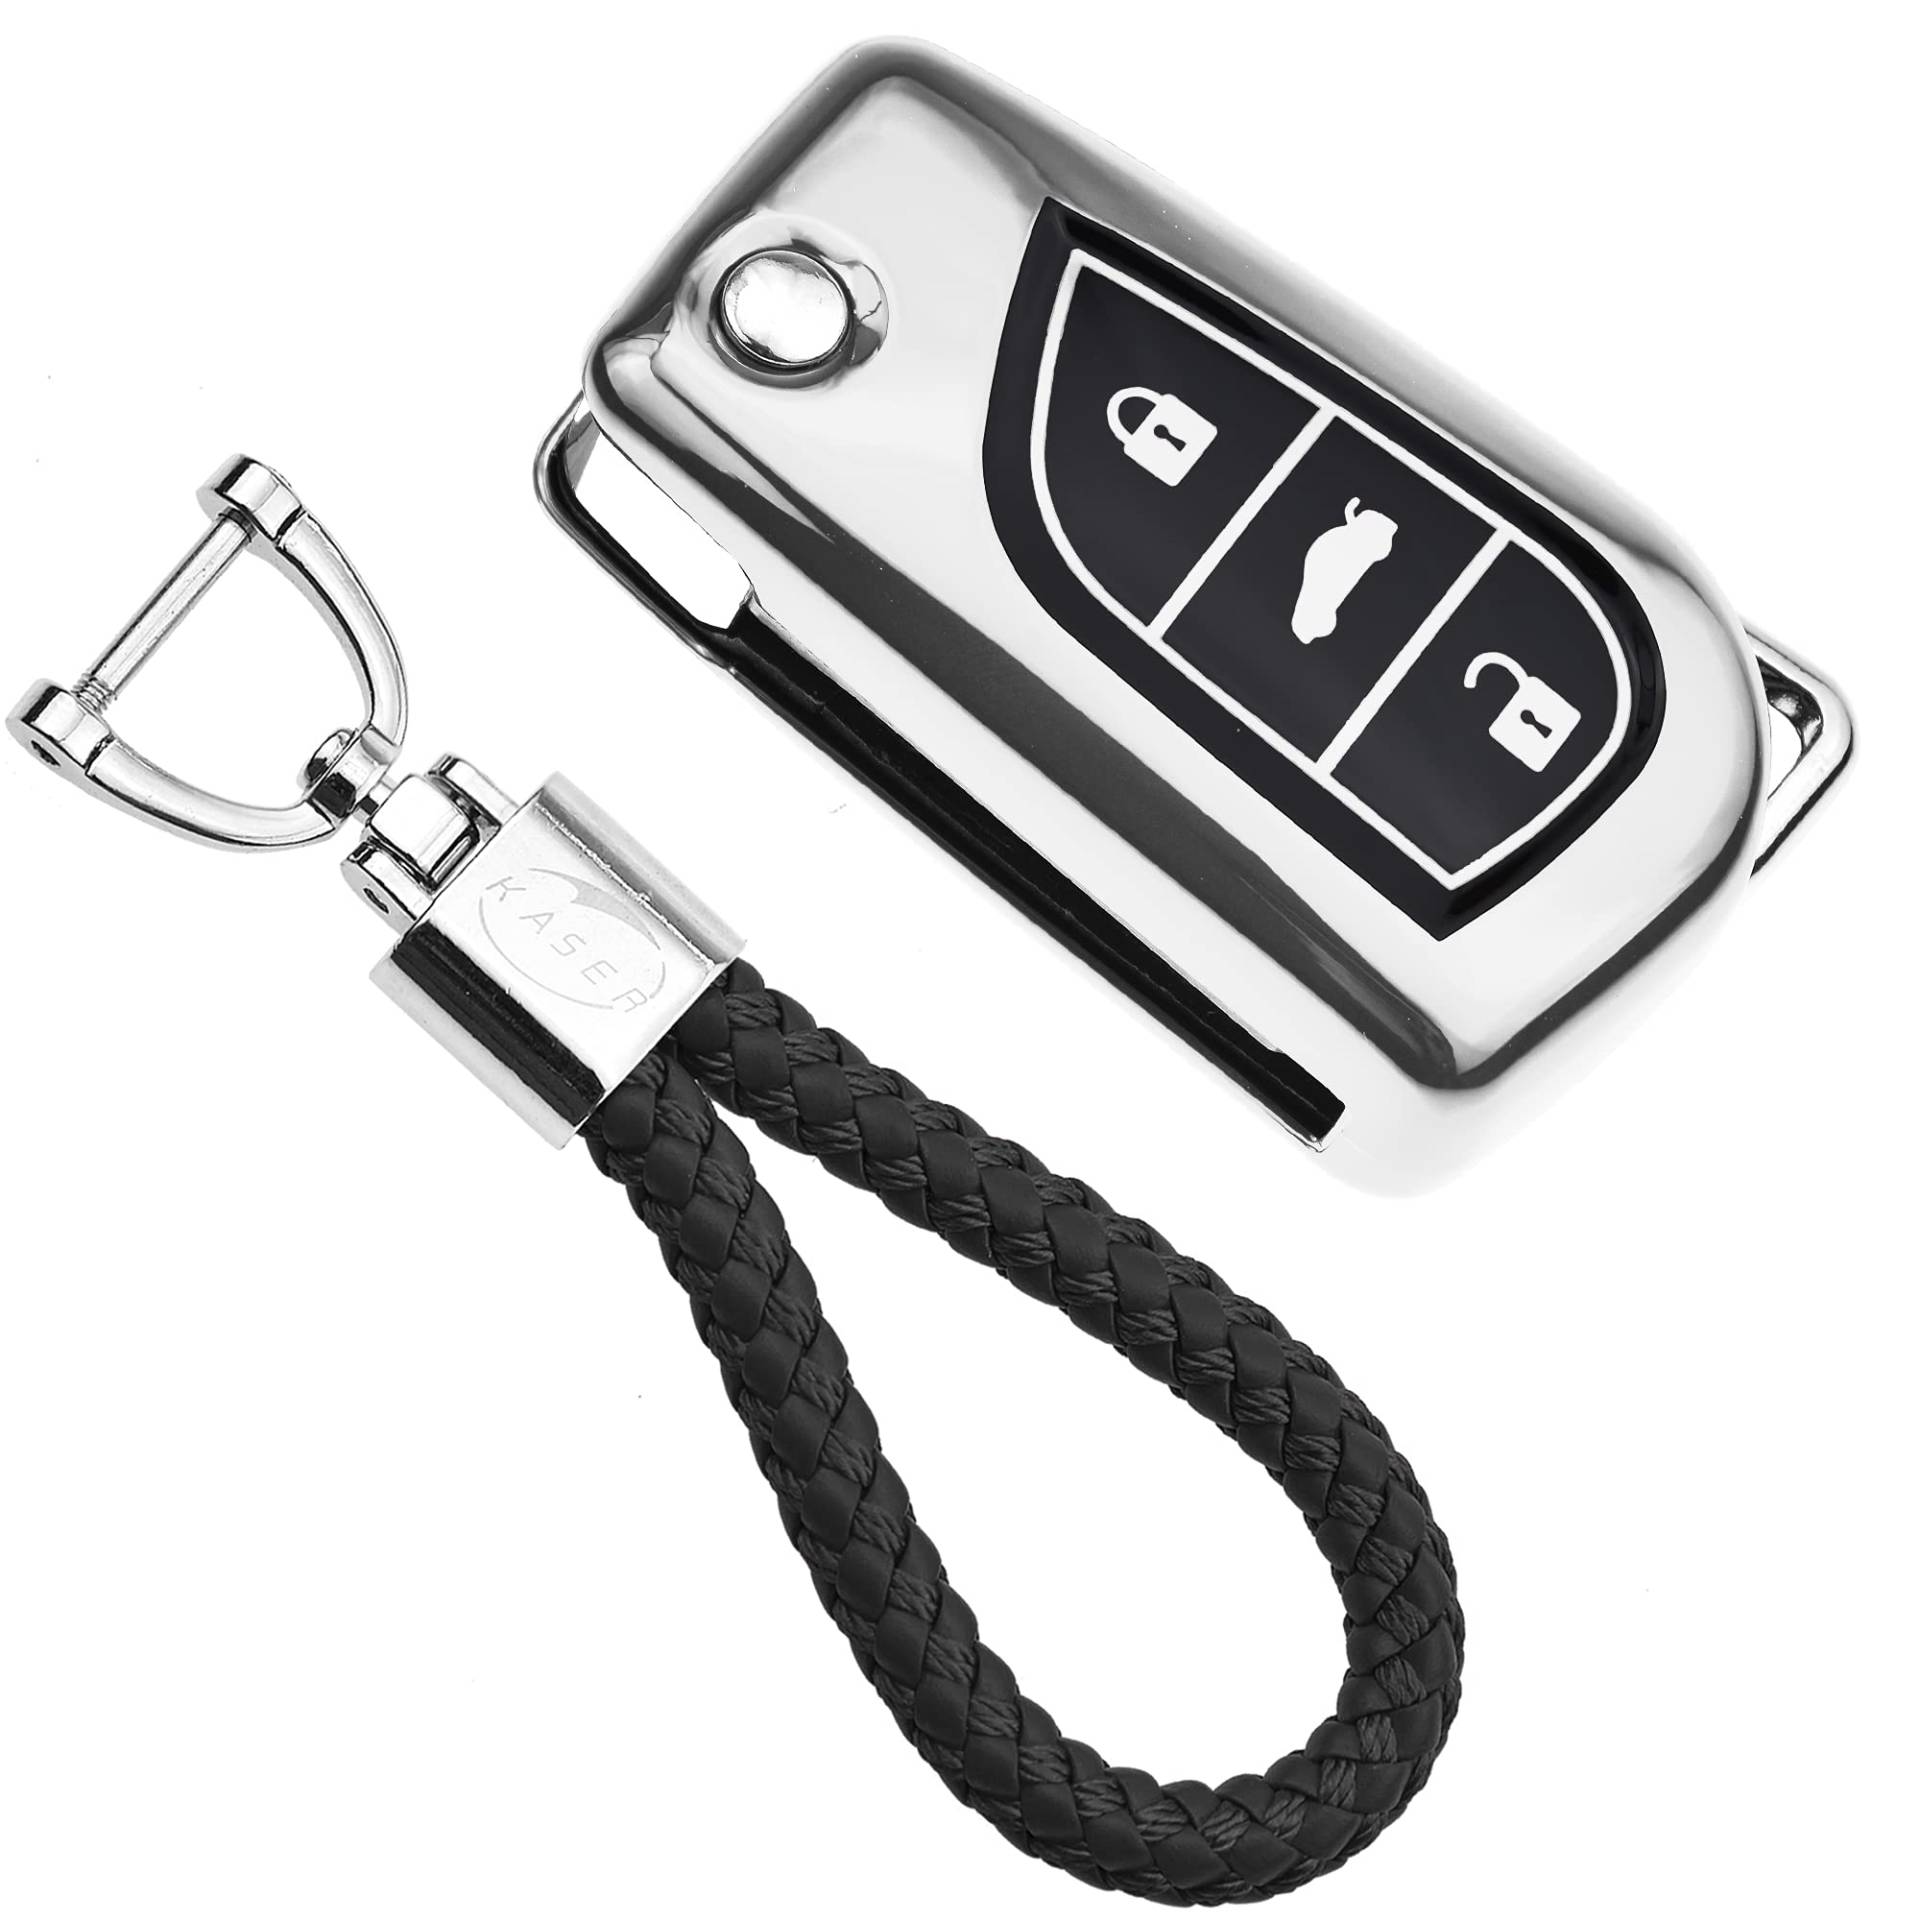 KASER Autoschlüssel Hülle kompatibel für Toyota Cover TPU Silikon Hochglanz Schutzhülle Schlüsselhülle Fernbedienung 3 Tasten Corolla RAV4 CH-R Yaris Schlüsselbund (Silber) von Kaser